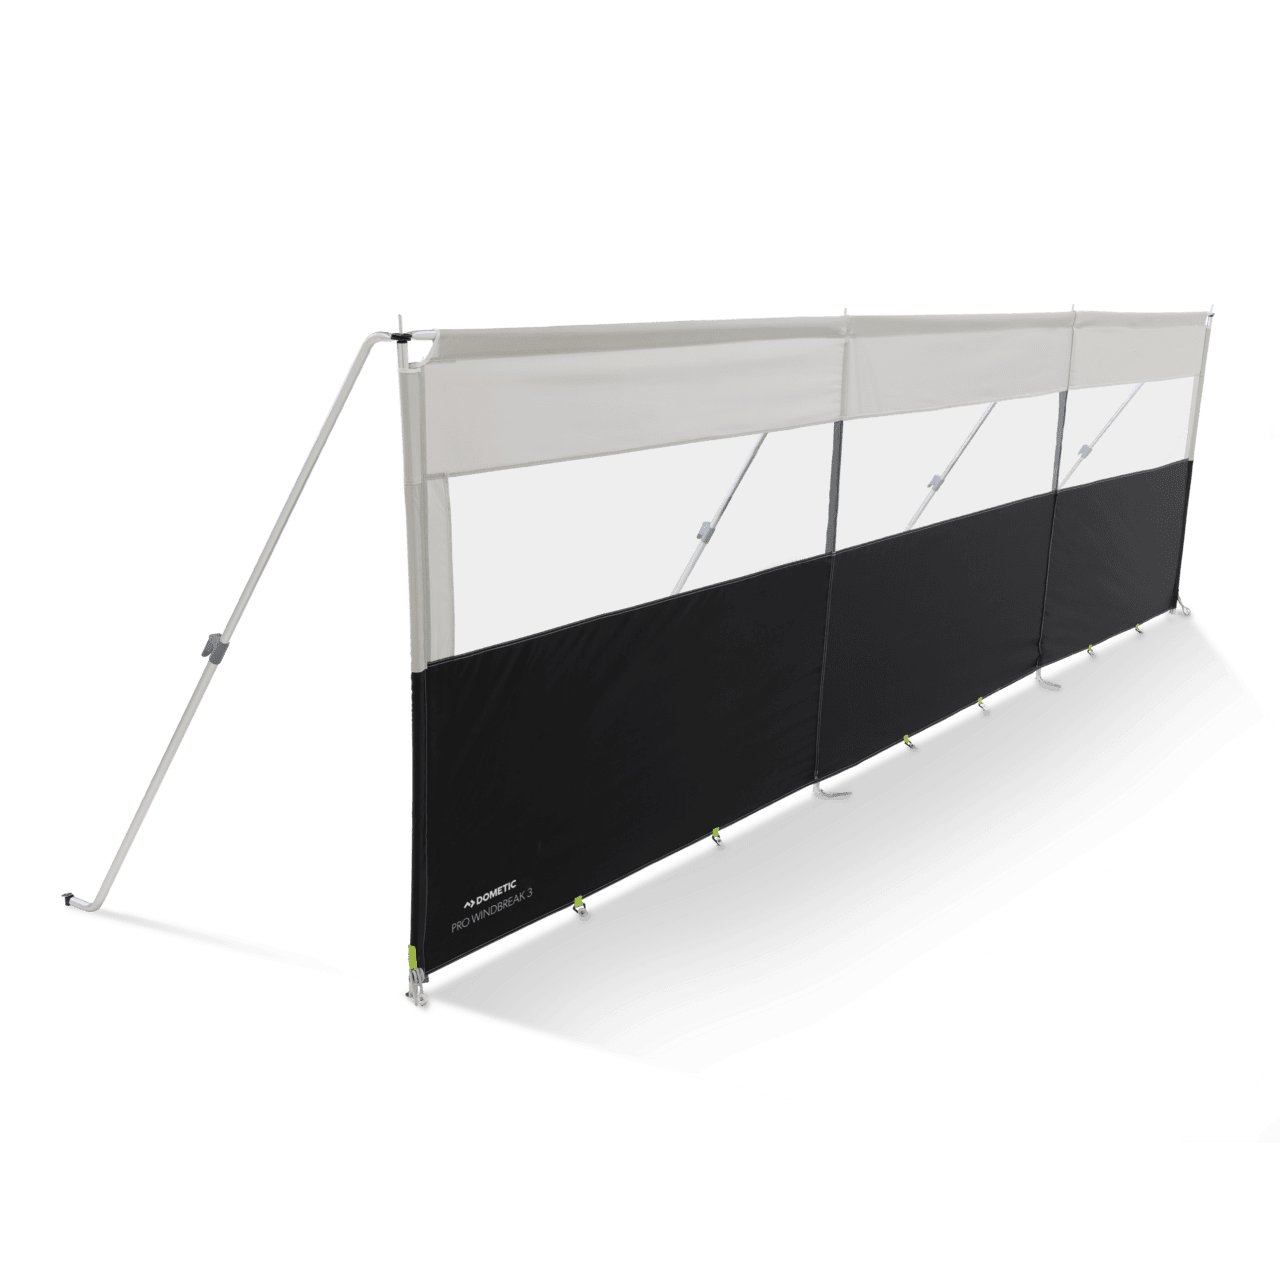 Windschutz Pro 3 mit Aluminium Gestänge Länge: 460 cm Höhe 140 cm Packmaß: 105 x 17 x 18 cm, Gewicht: 10,7 kg